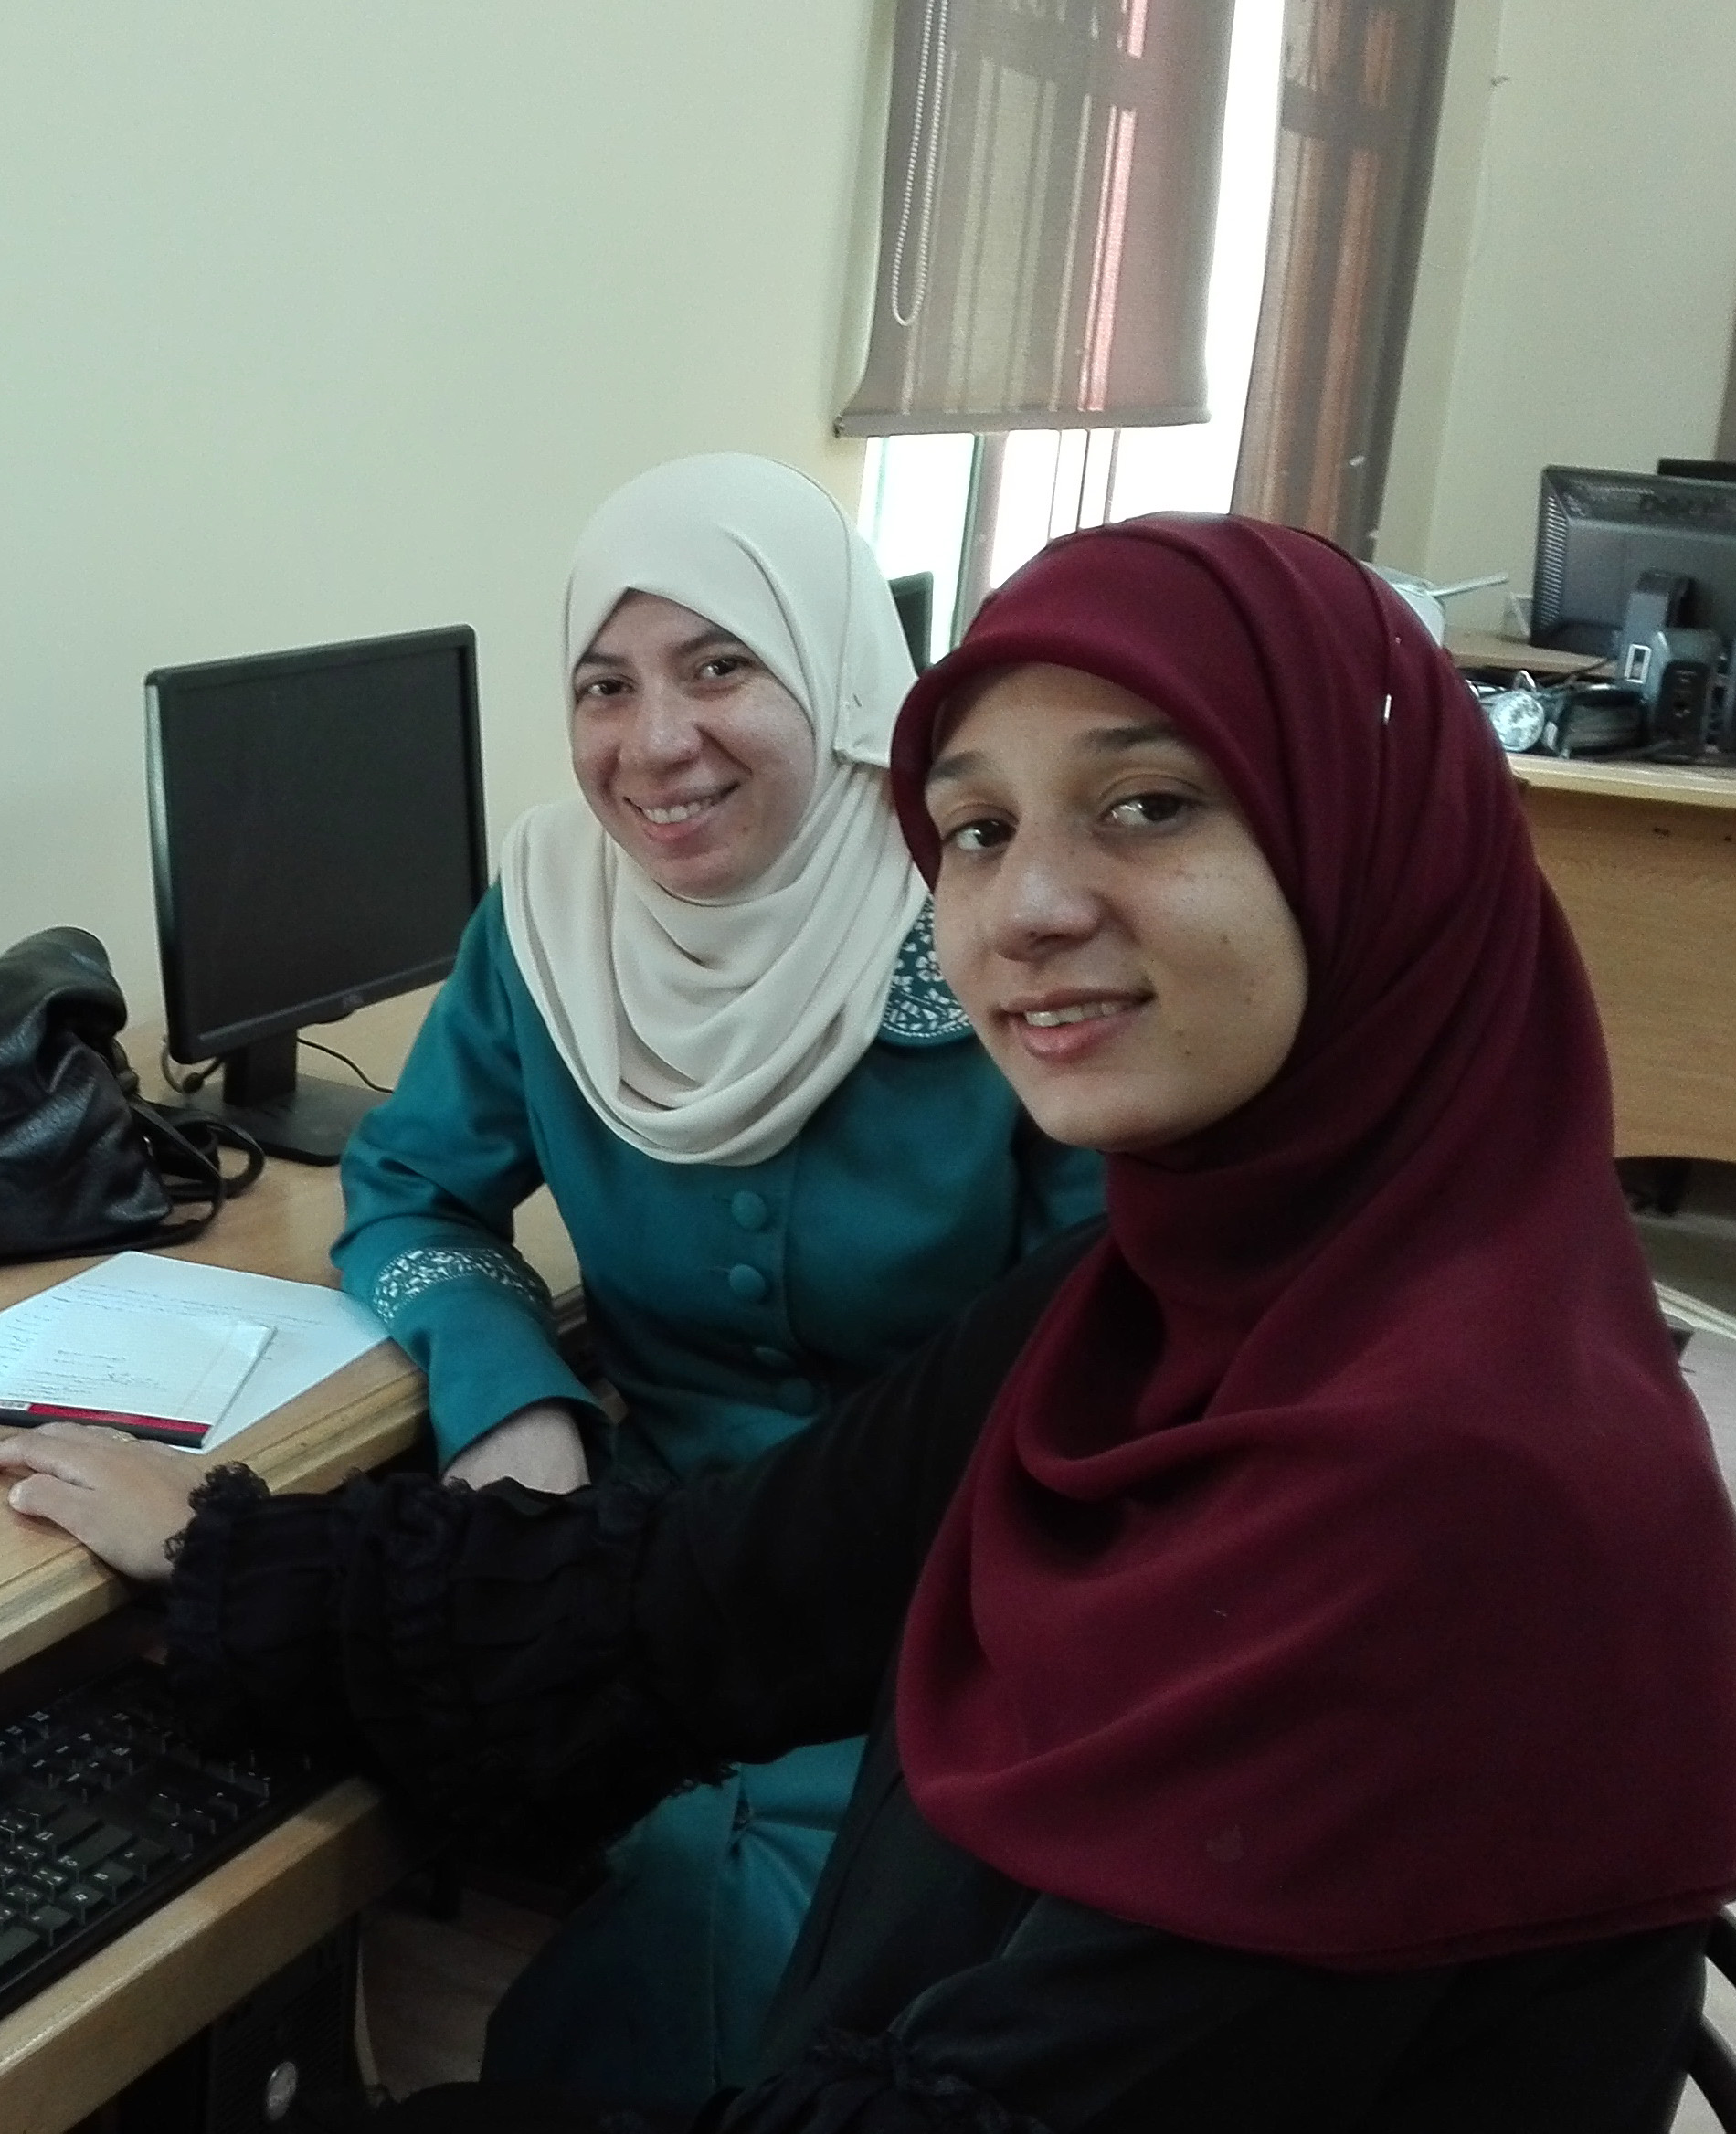 Students from the iEARN program in Jordan